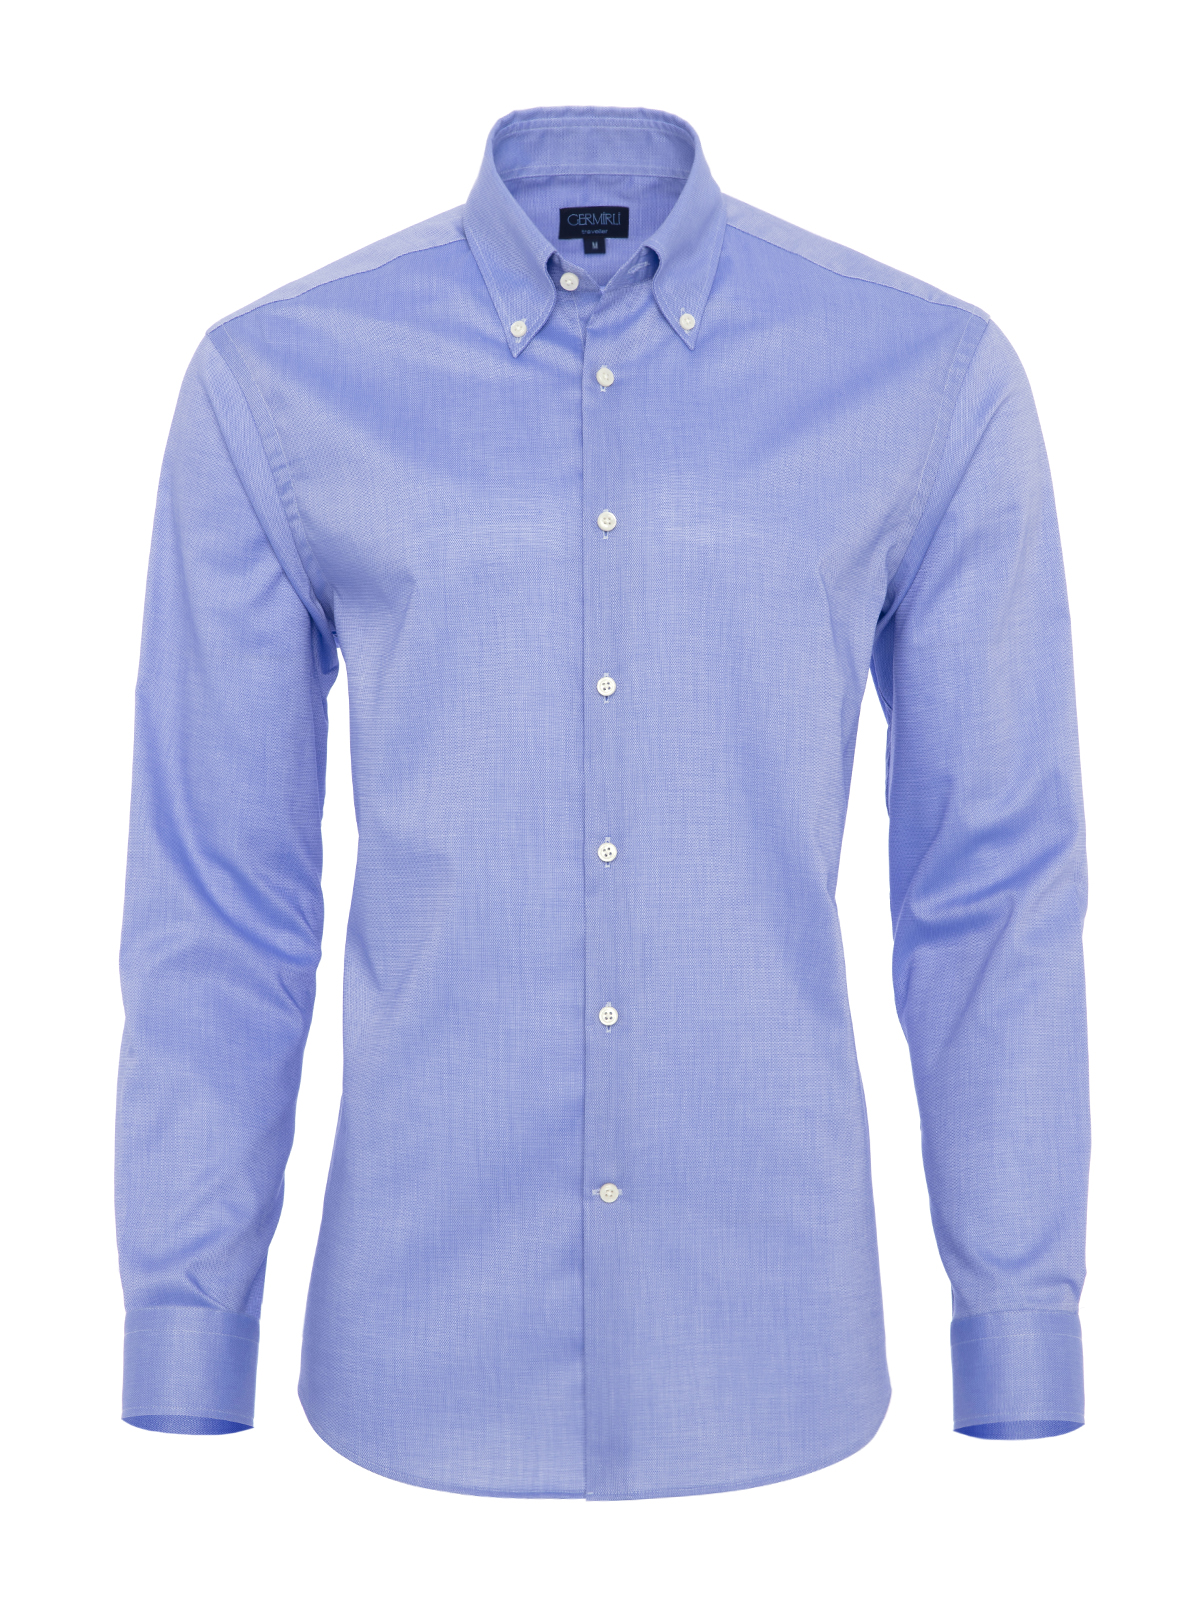 Germirli - Germirli Non Iron K.Mavi Oxford Düğmeli Yaka Tailor Fit Gömlek